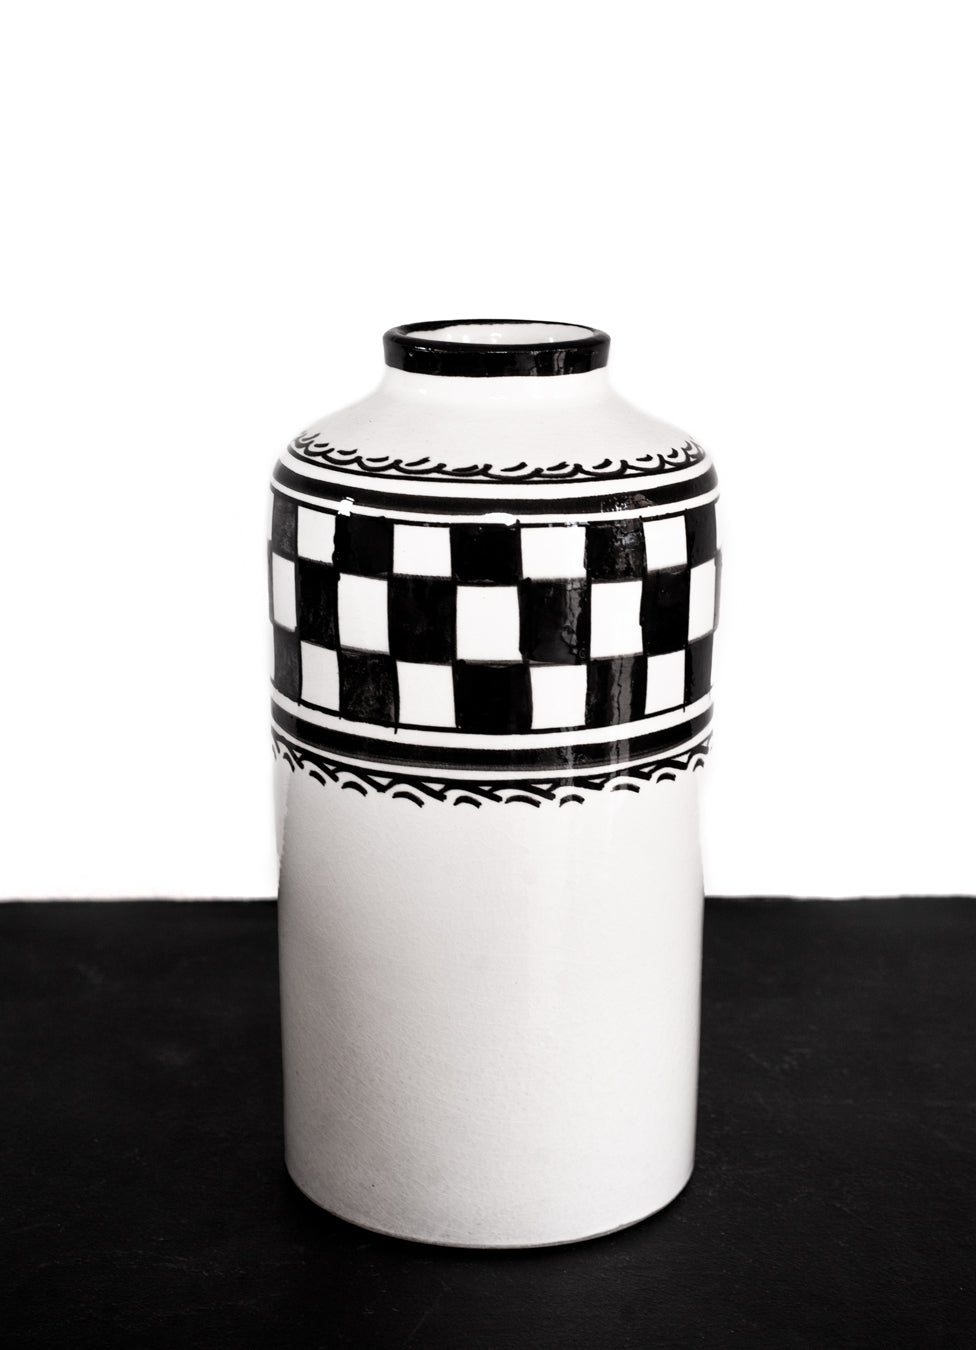 Monochrome Ceramic Vase